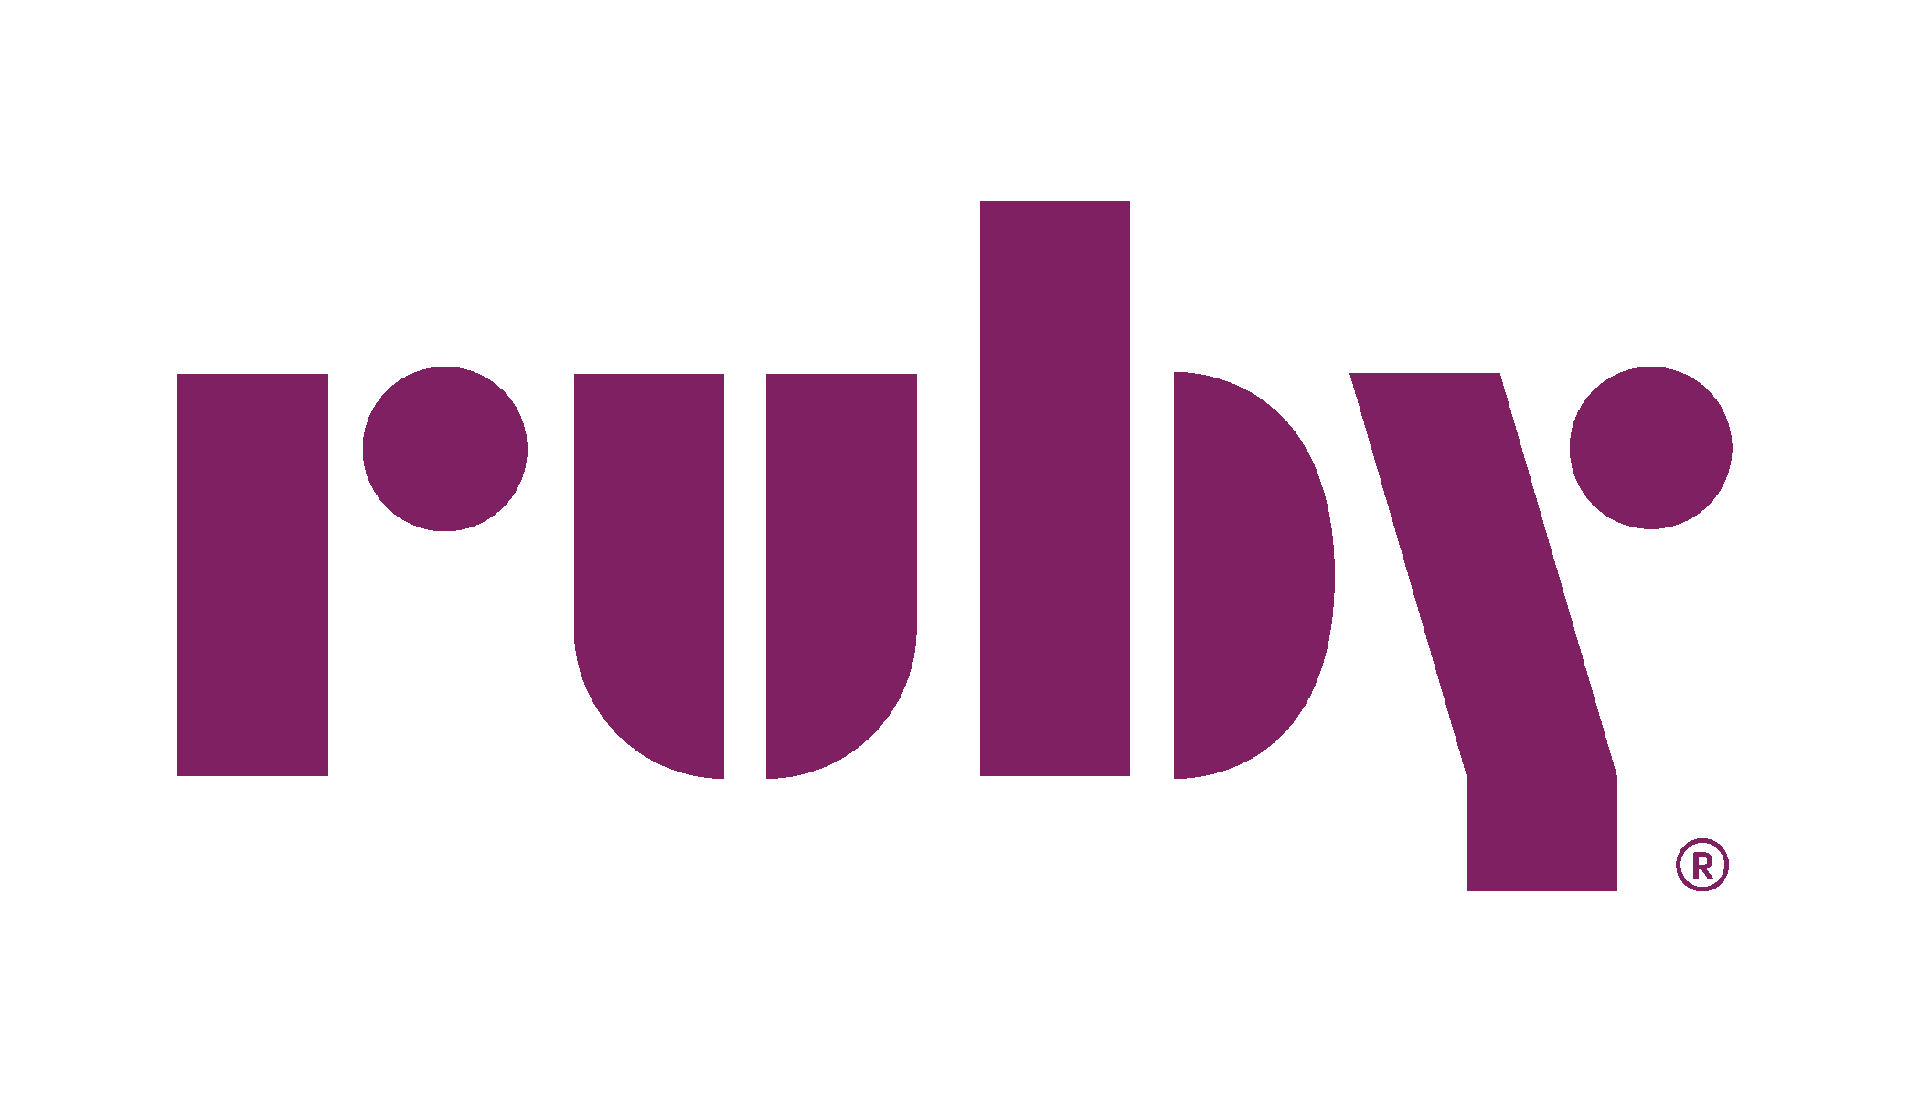 Ruby logo in purple